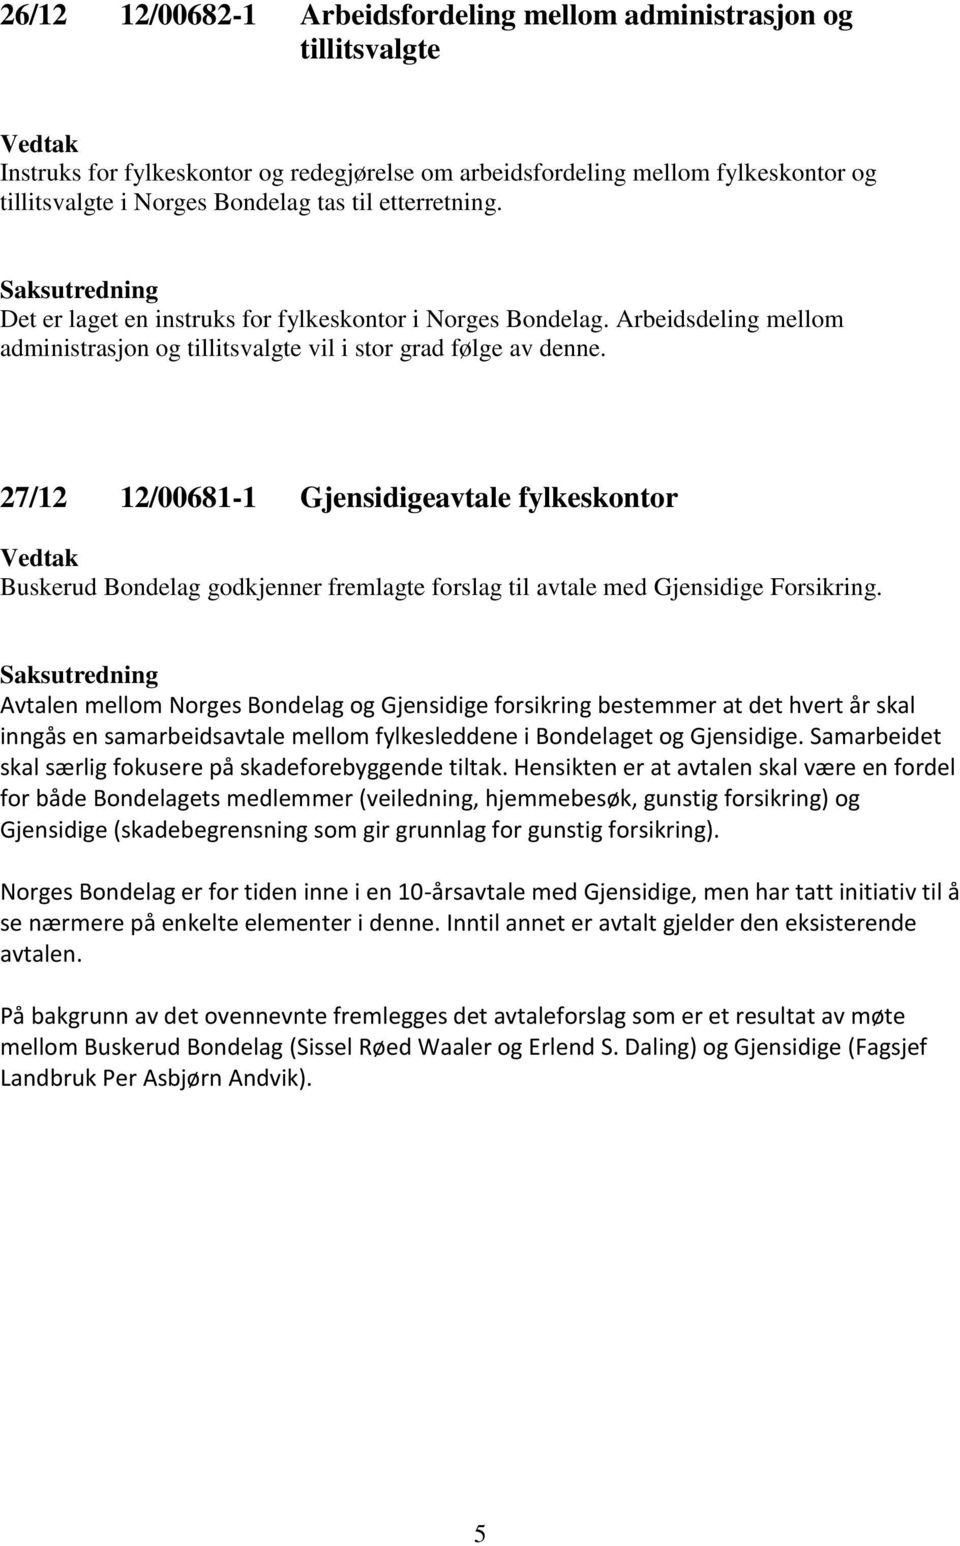 27/12 12/00681-1 Gjensidigeavtale fylkeskontor Buskerud Bondelag godkjenner fremlagte forslag til avtale med Gjensidige Forsikring.